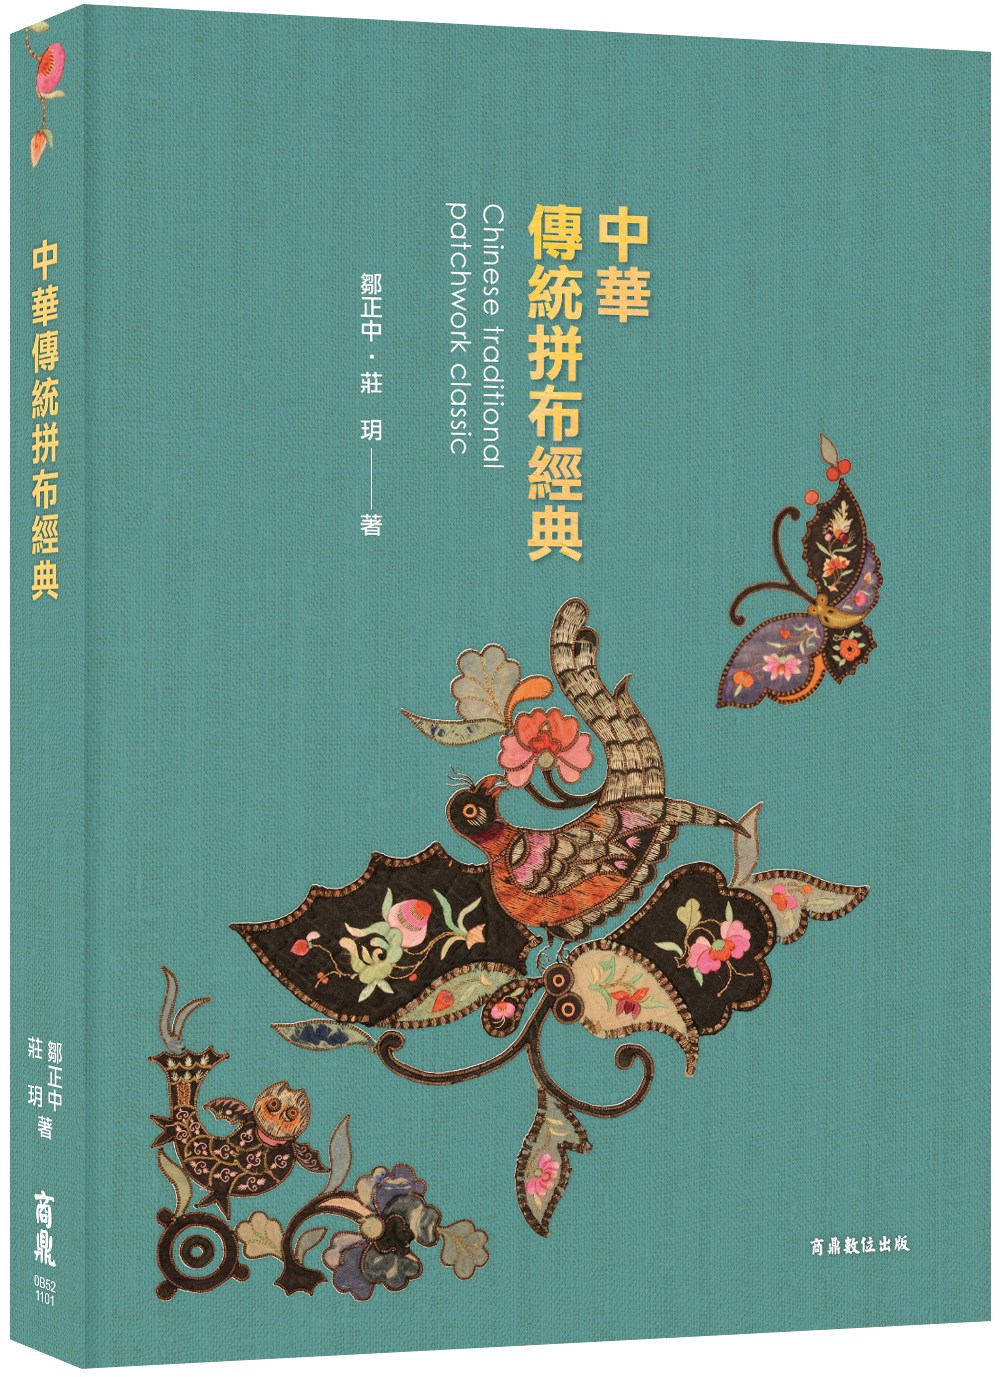 ［中華拼布文化經典］中華傳統拼布經典